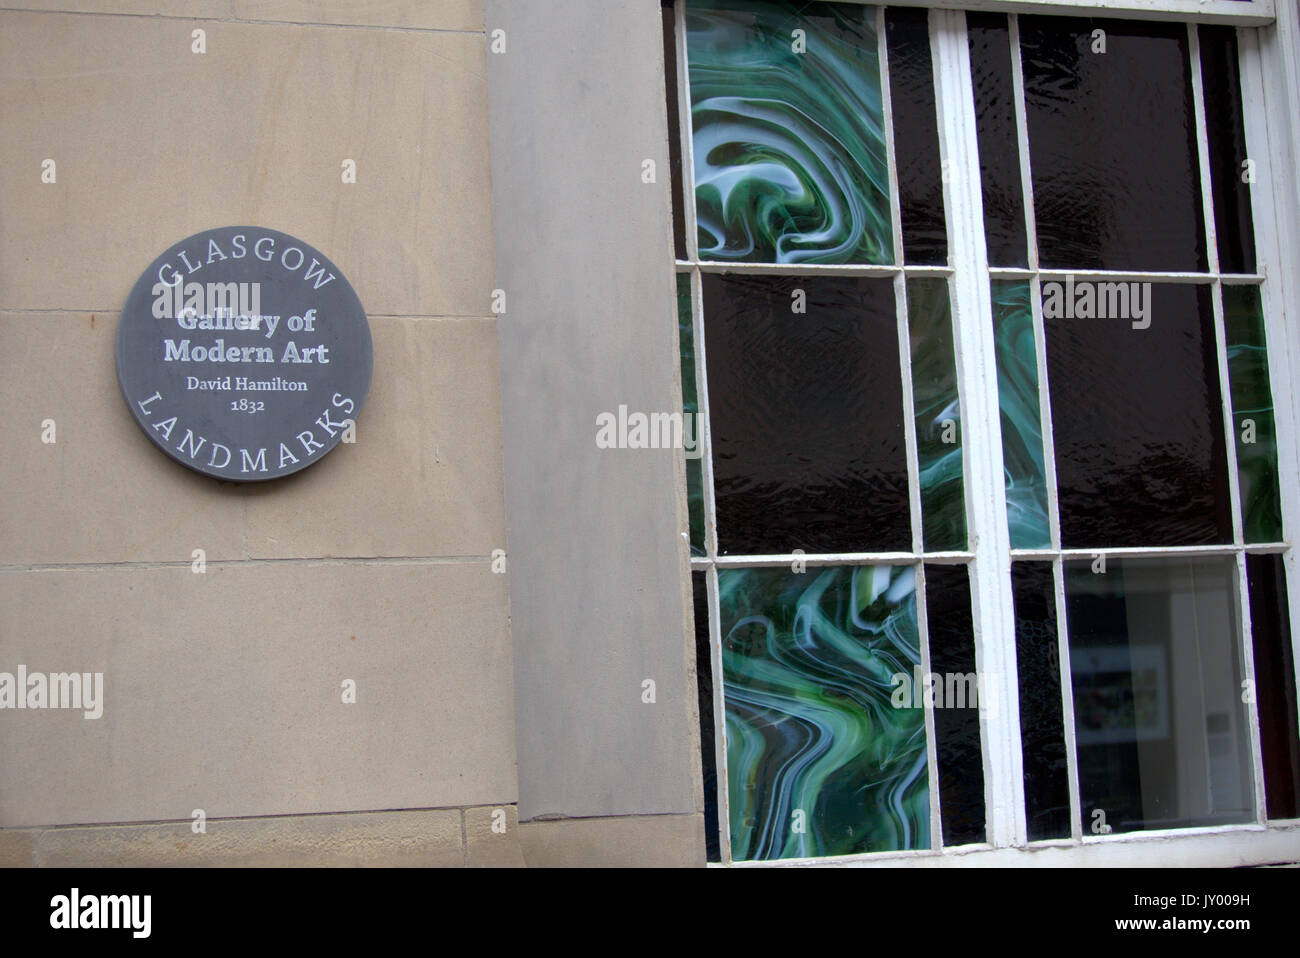 Galería de arte moderno goma glasgow hitos placa en el lateral del edificio al arquitecto que diseñó el edificio original David Hamilton Foto de stock